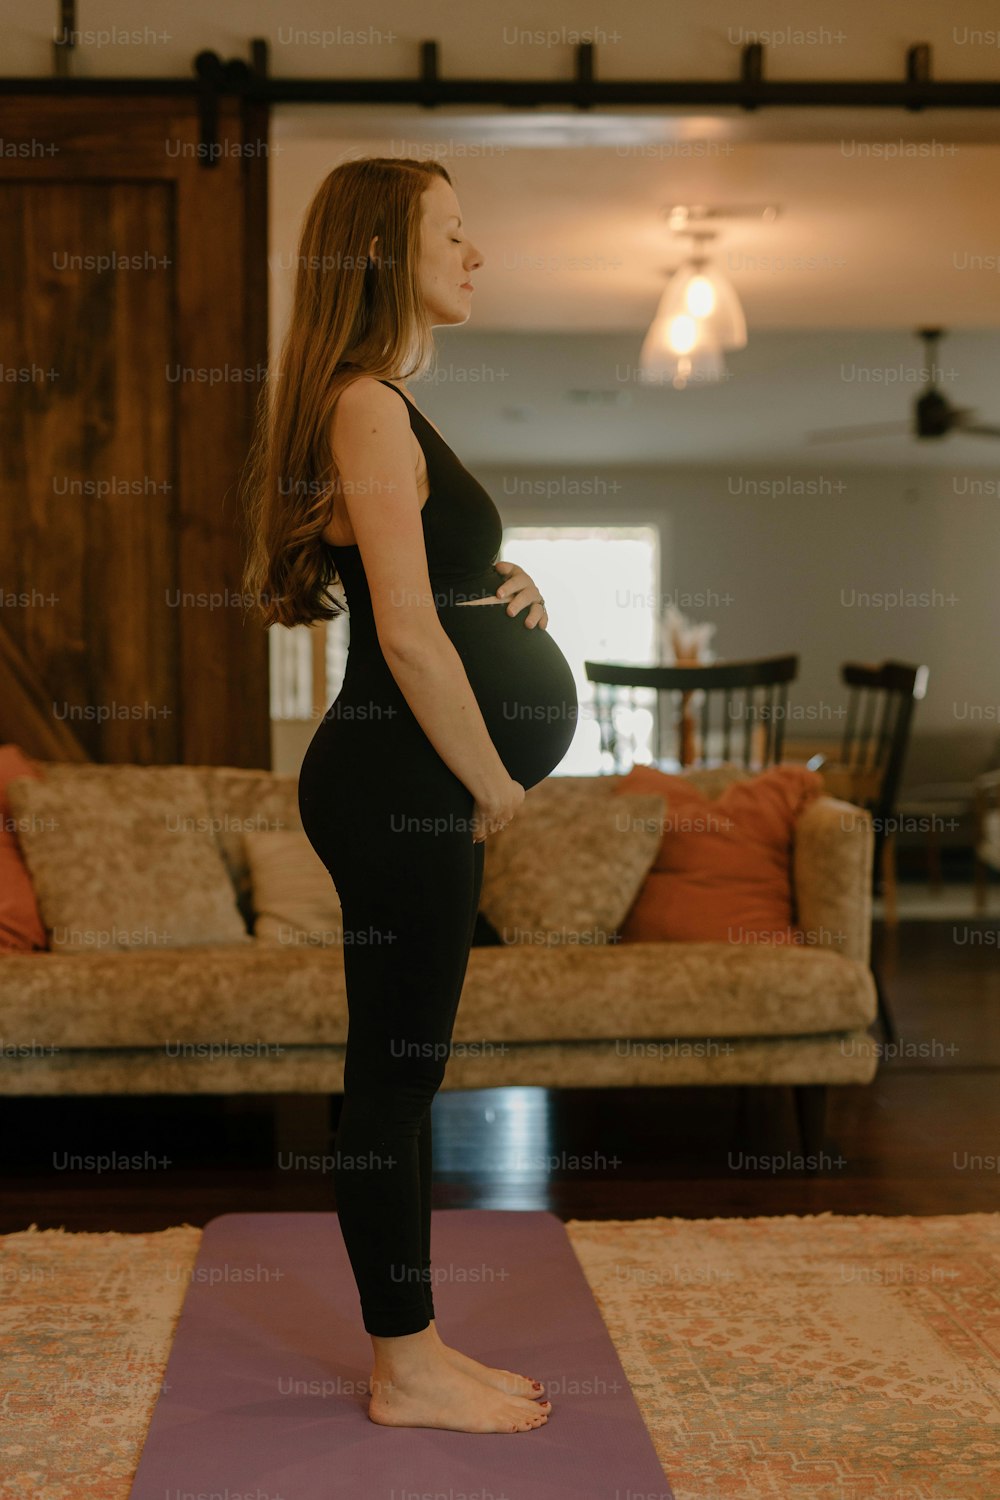 Eine schwangere Frau, die auf einer Yogamatte in einem Wohnzimmer steht